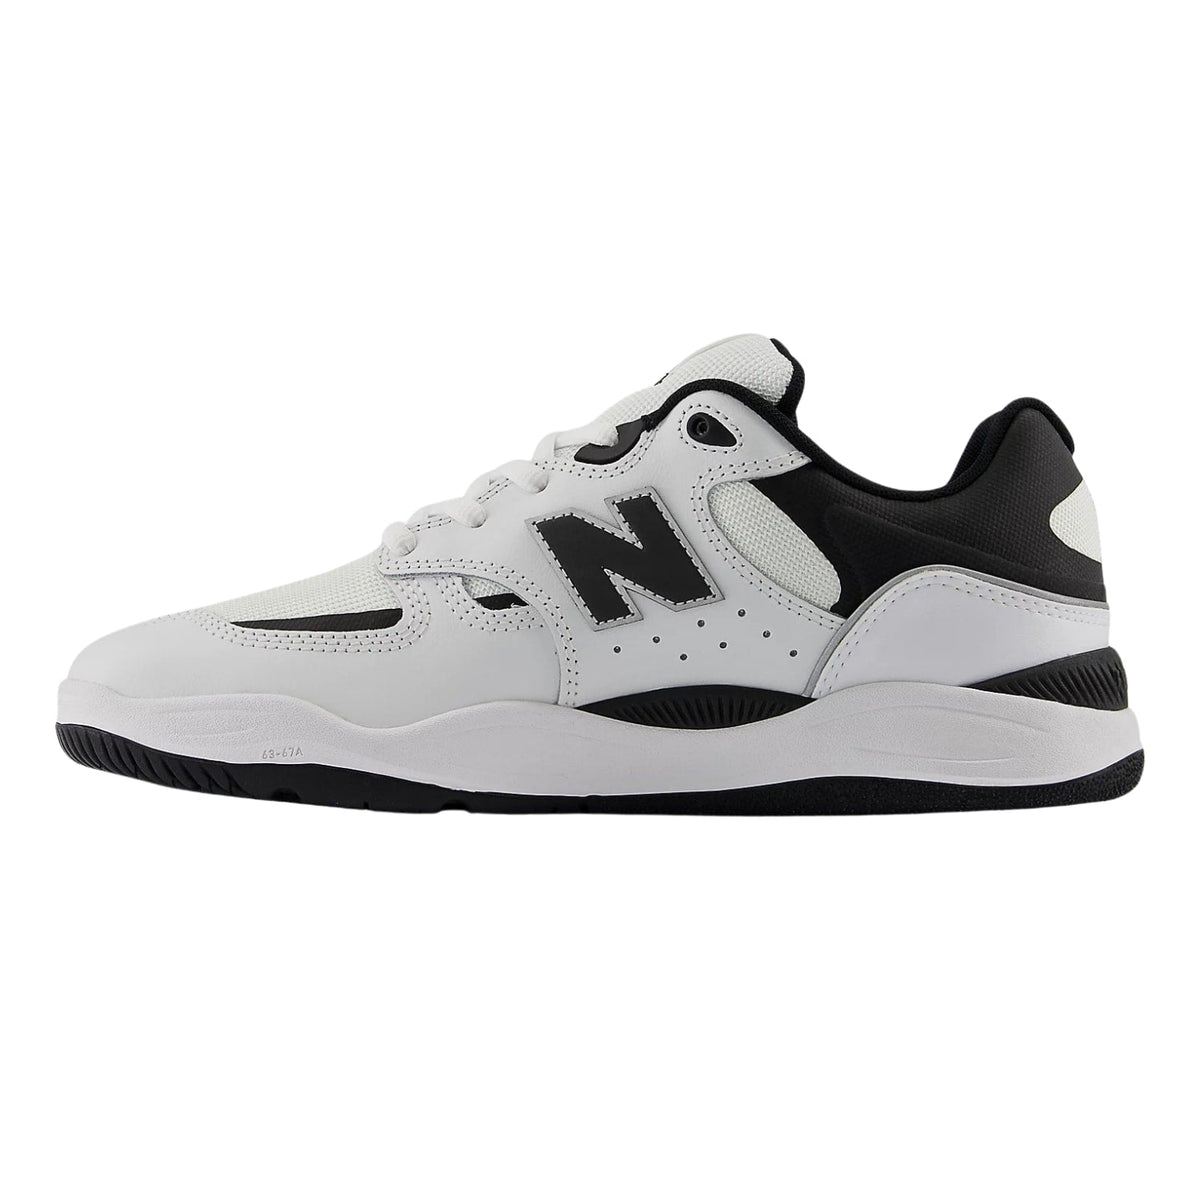 New Balance Numeric Nm1010 Tiago Lemos Skate Shoes - White Black - Mens Skate Shoes by New Balance Numeric